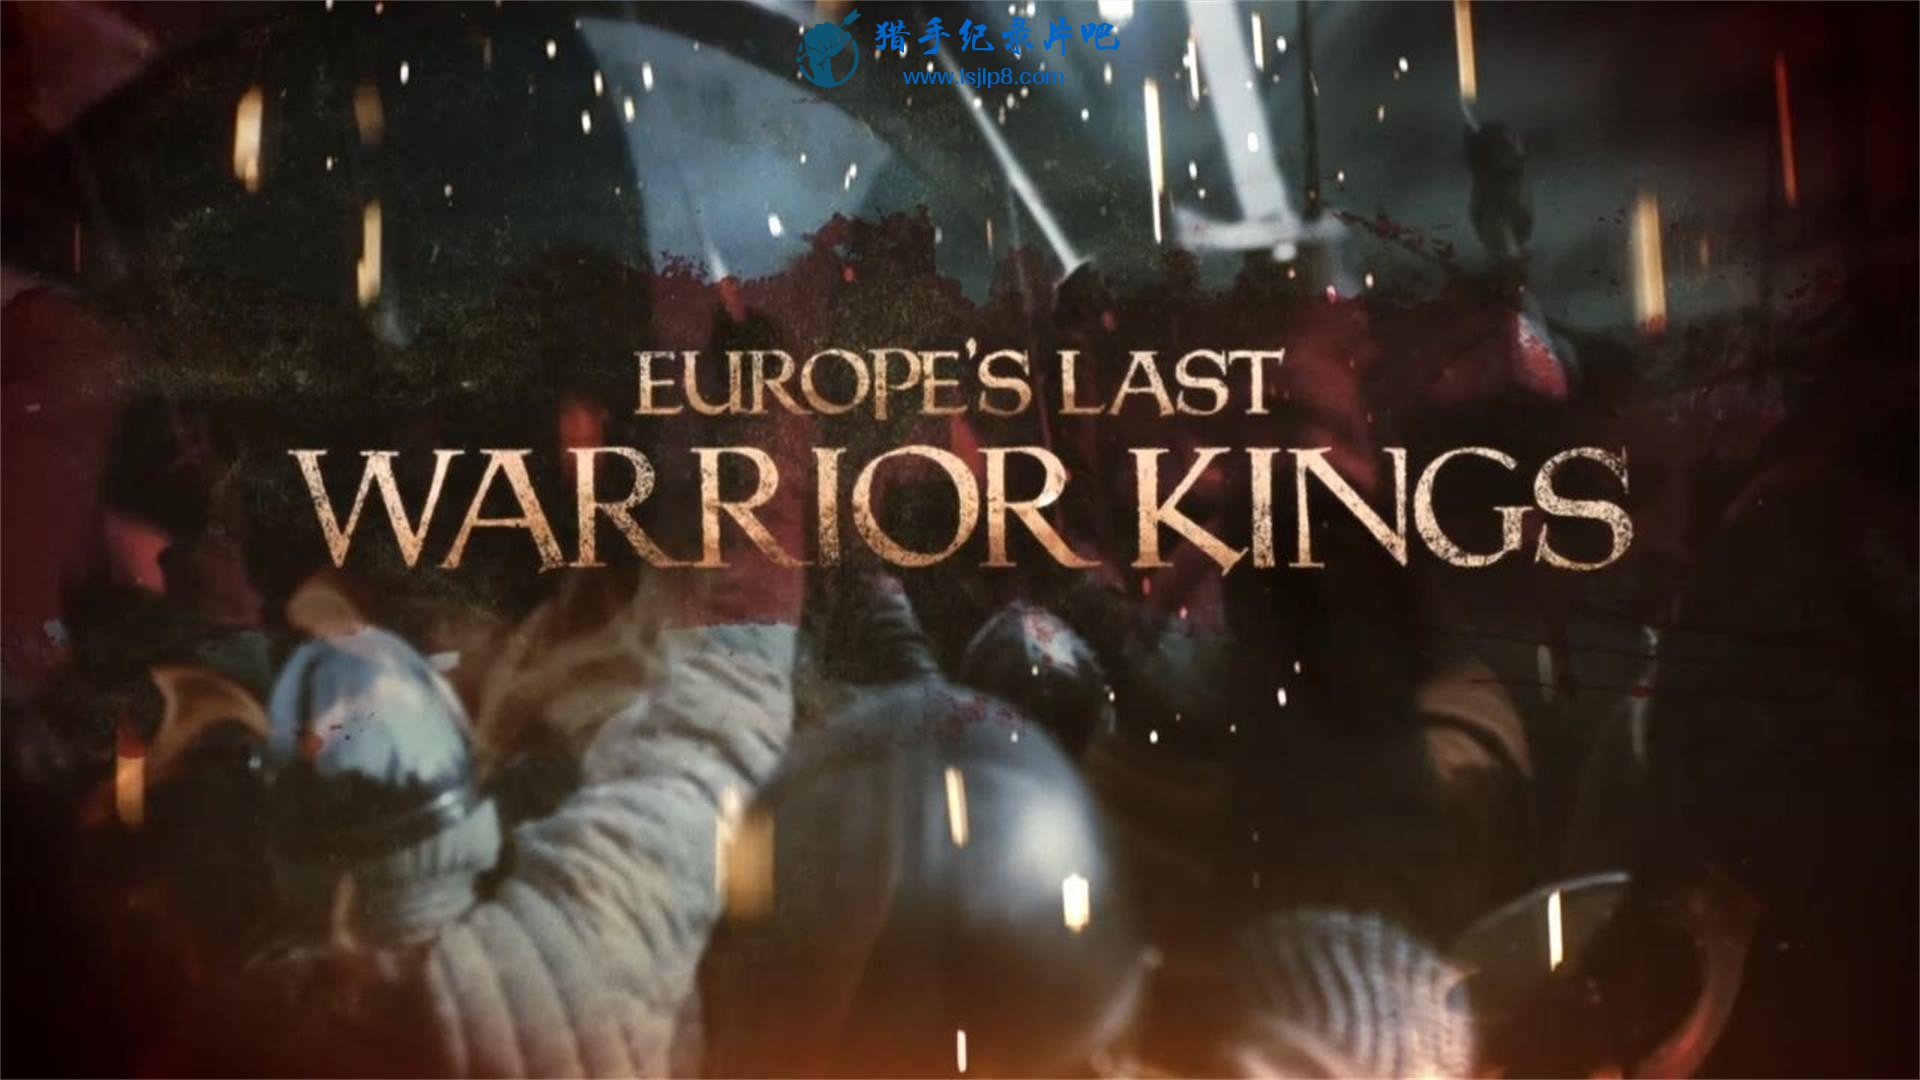 europes.last.warrior.kings.s01e01.20200304110229.jpg